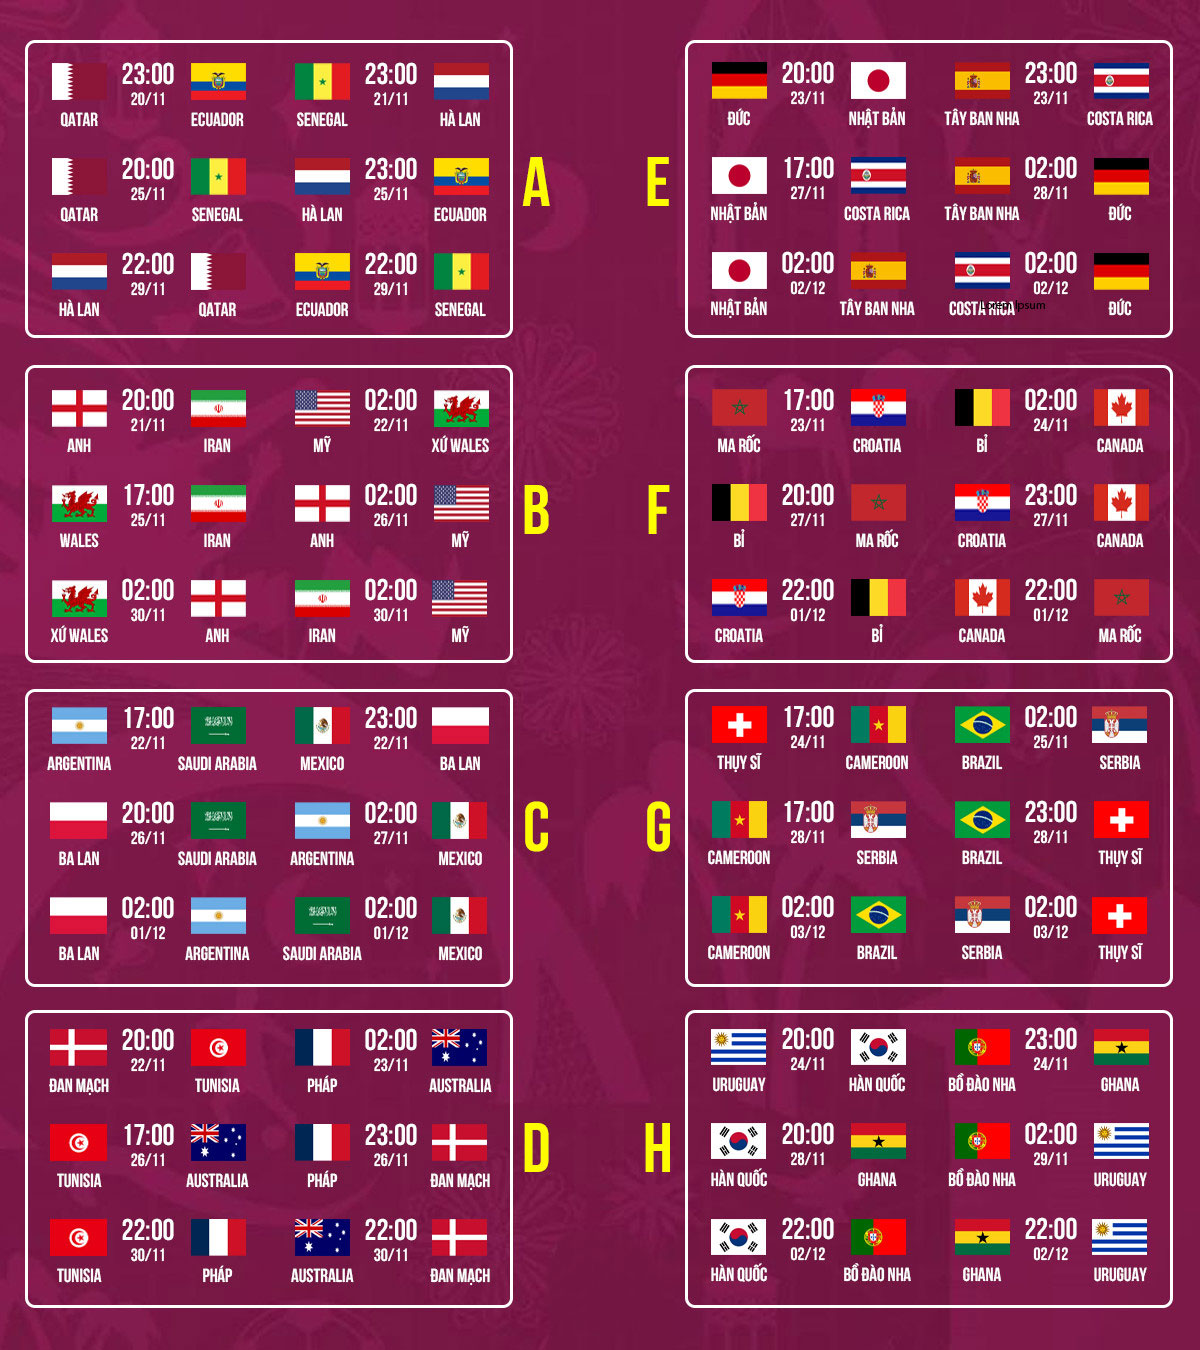 LỊCH THI ĐẤU WORLD CUP 2022 MỚI NHẤT TẠI VIỆT NAM